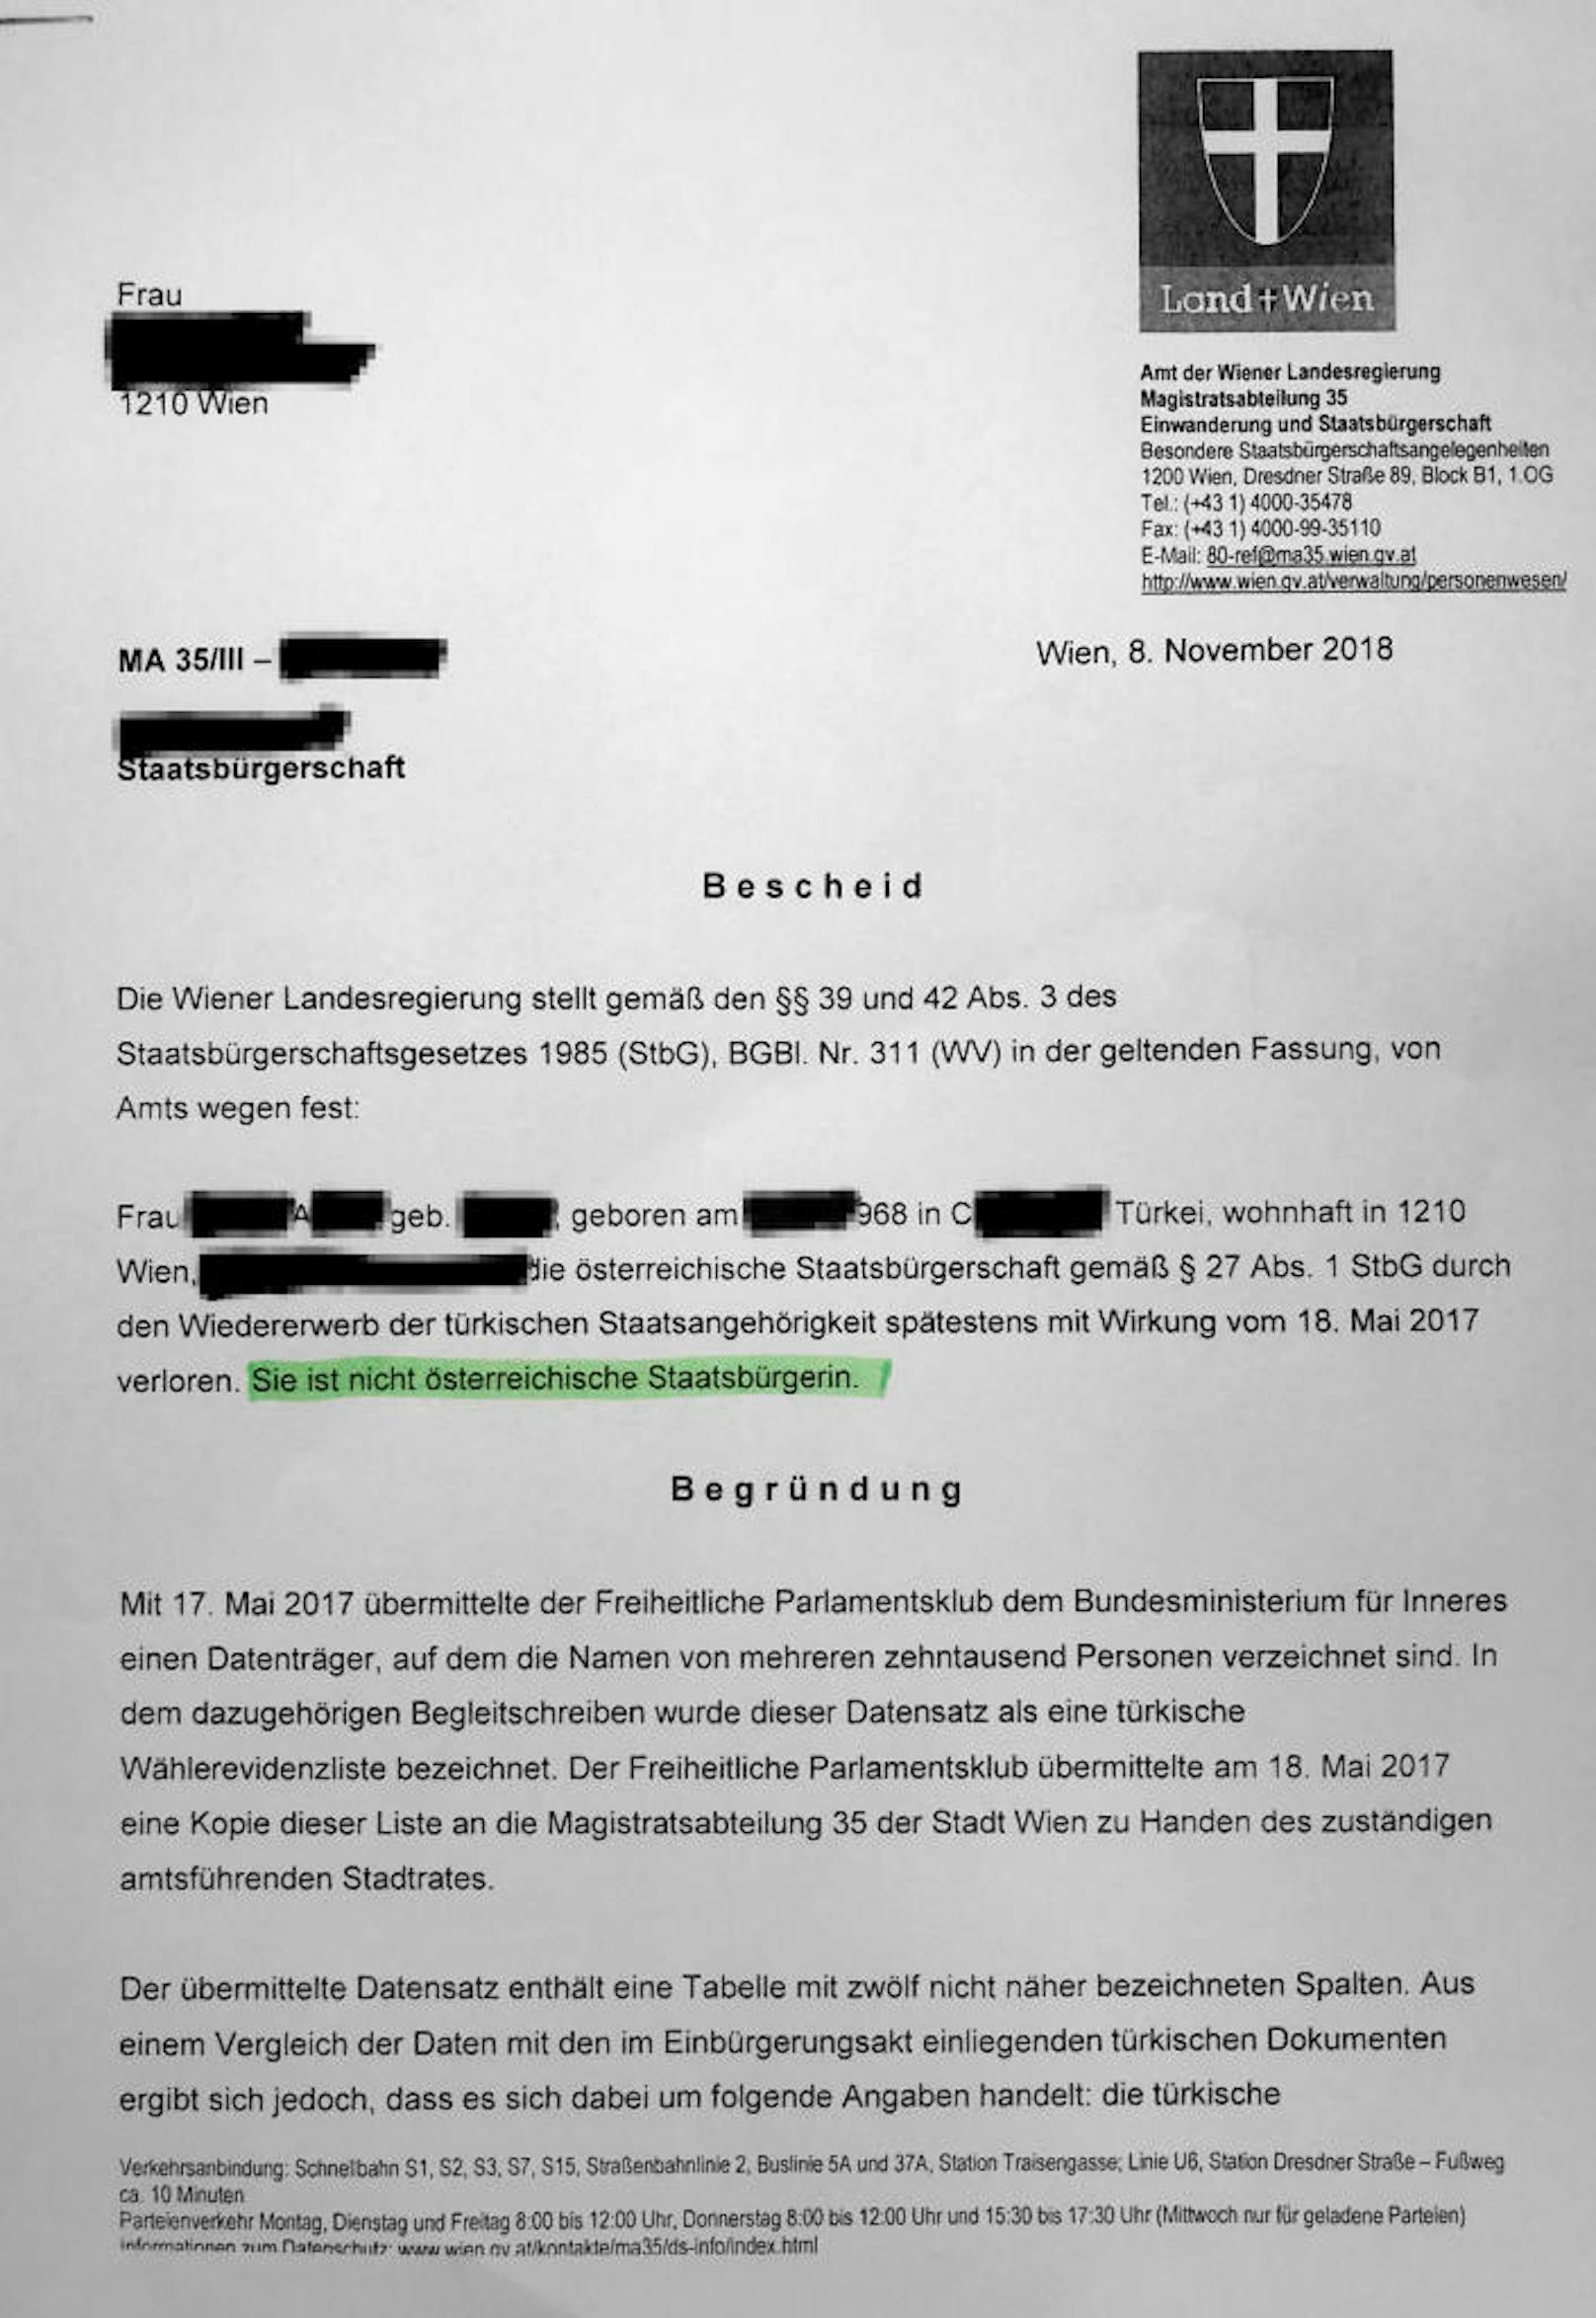 Post von der MA 35: Mit der Begründung der angeblichen Liste von Doppelstaatsbürgern der FPÖ übermittelte die Wiener Landesbehörden Frau Selin A. die niederschmetternde Botschaft: "Sie ist nicht österreichische Staatsbürgerin".